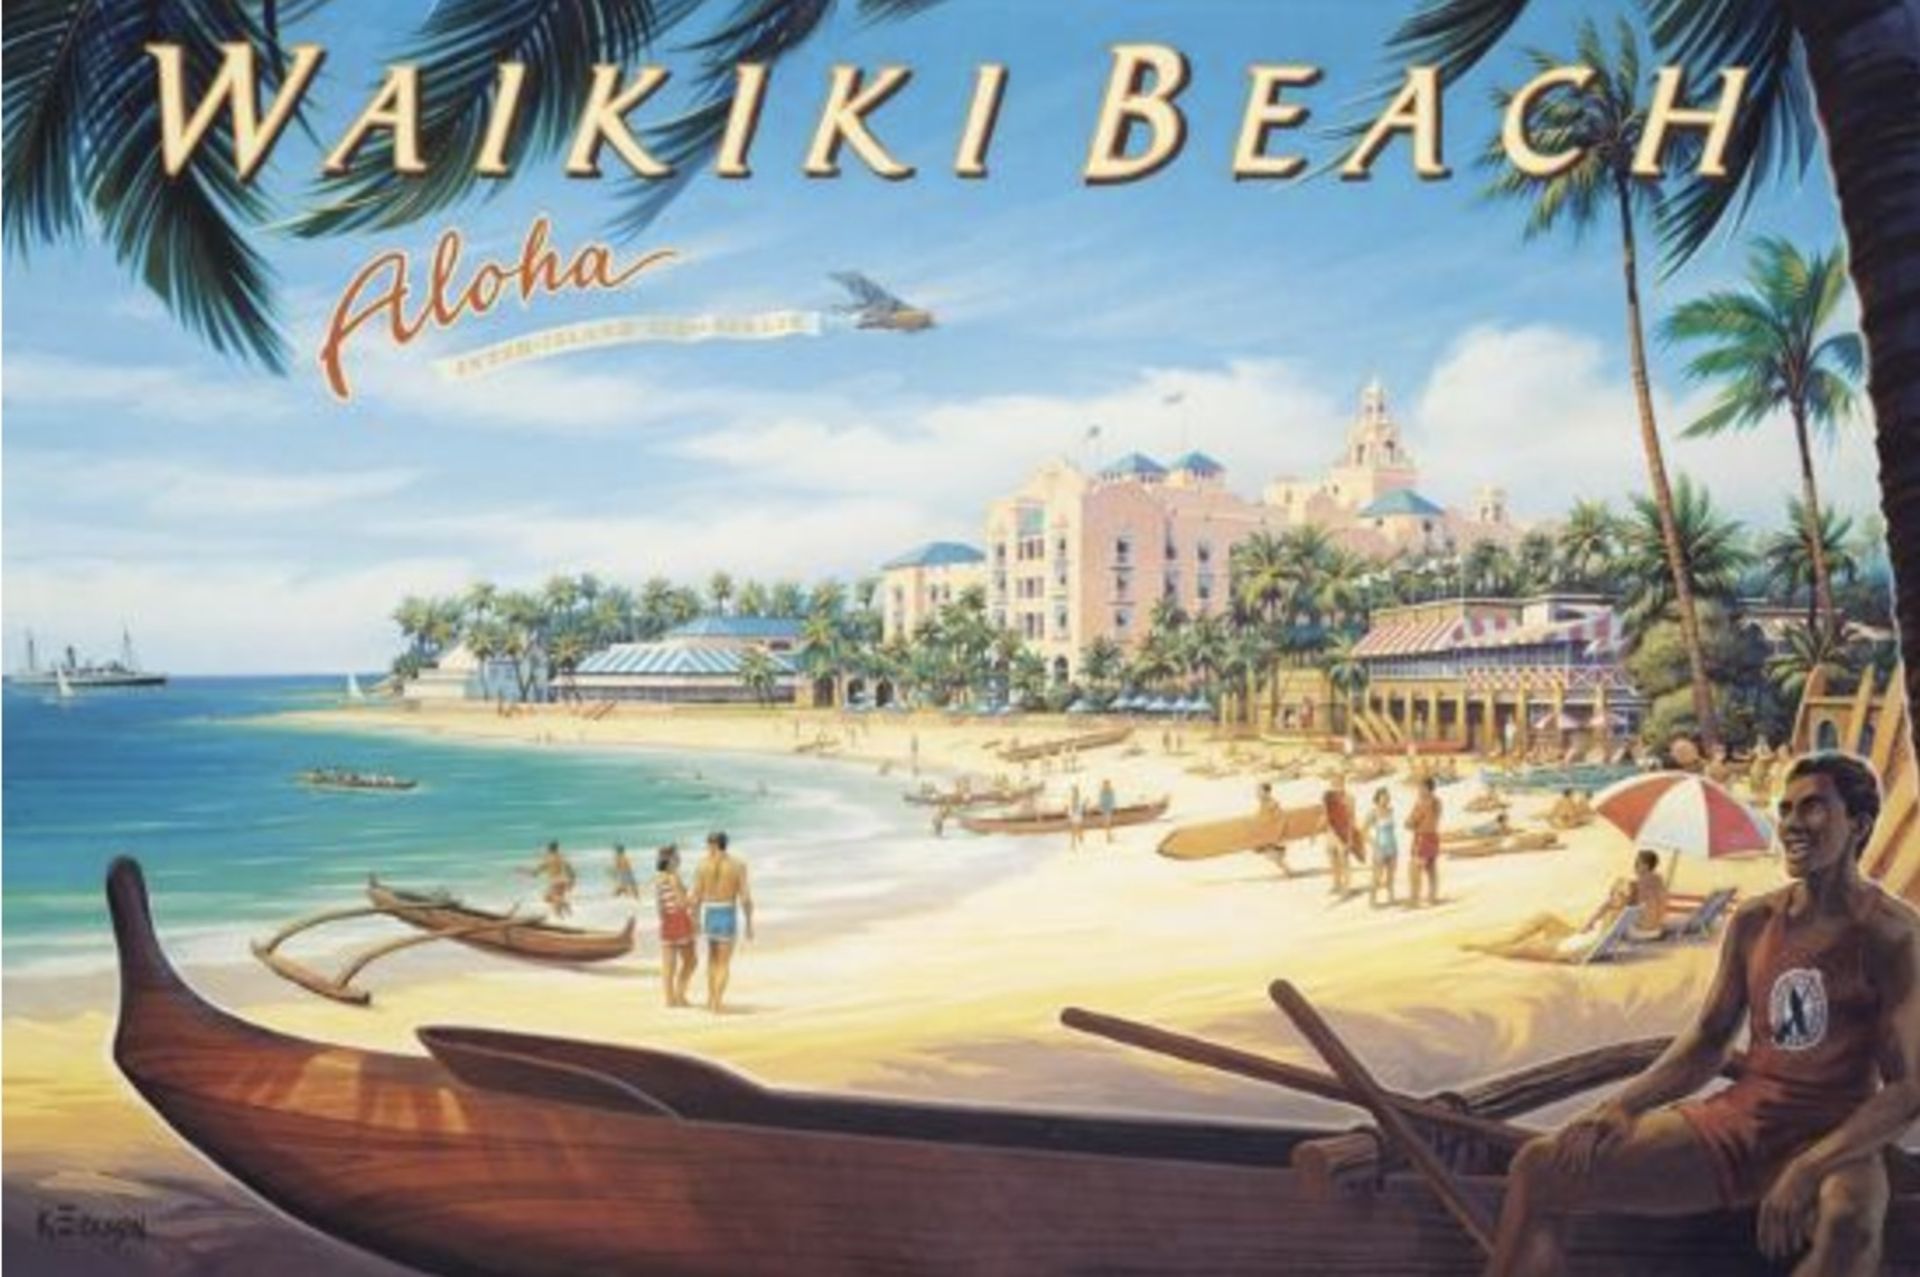 Waikiki Beach, Hawaii Travel Poster